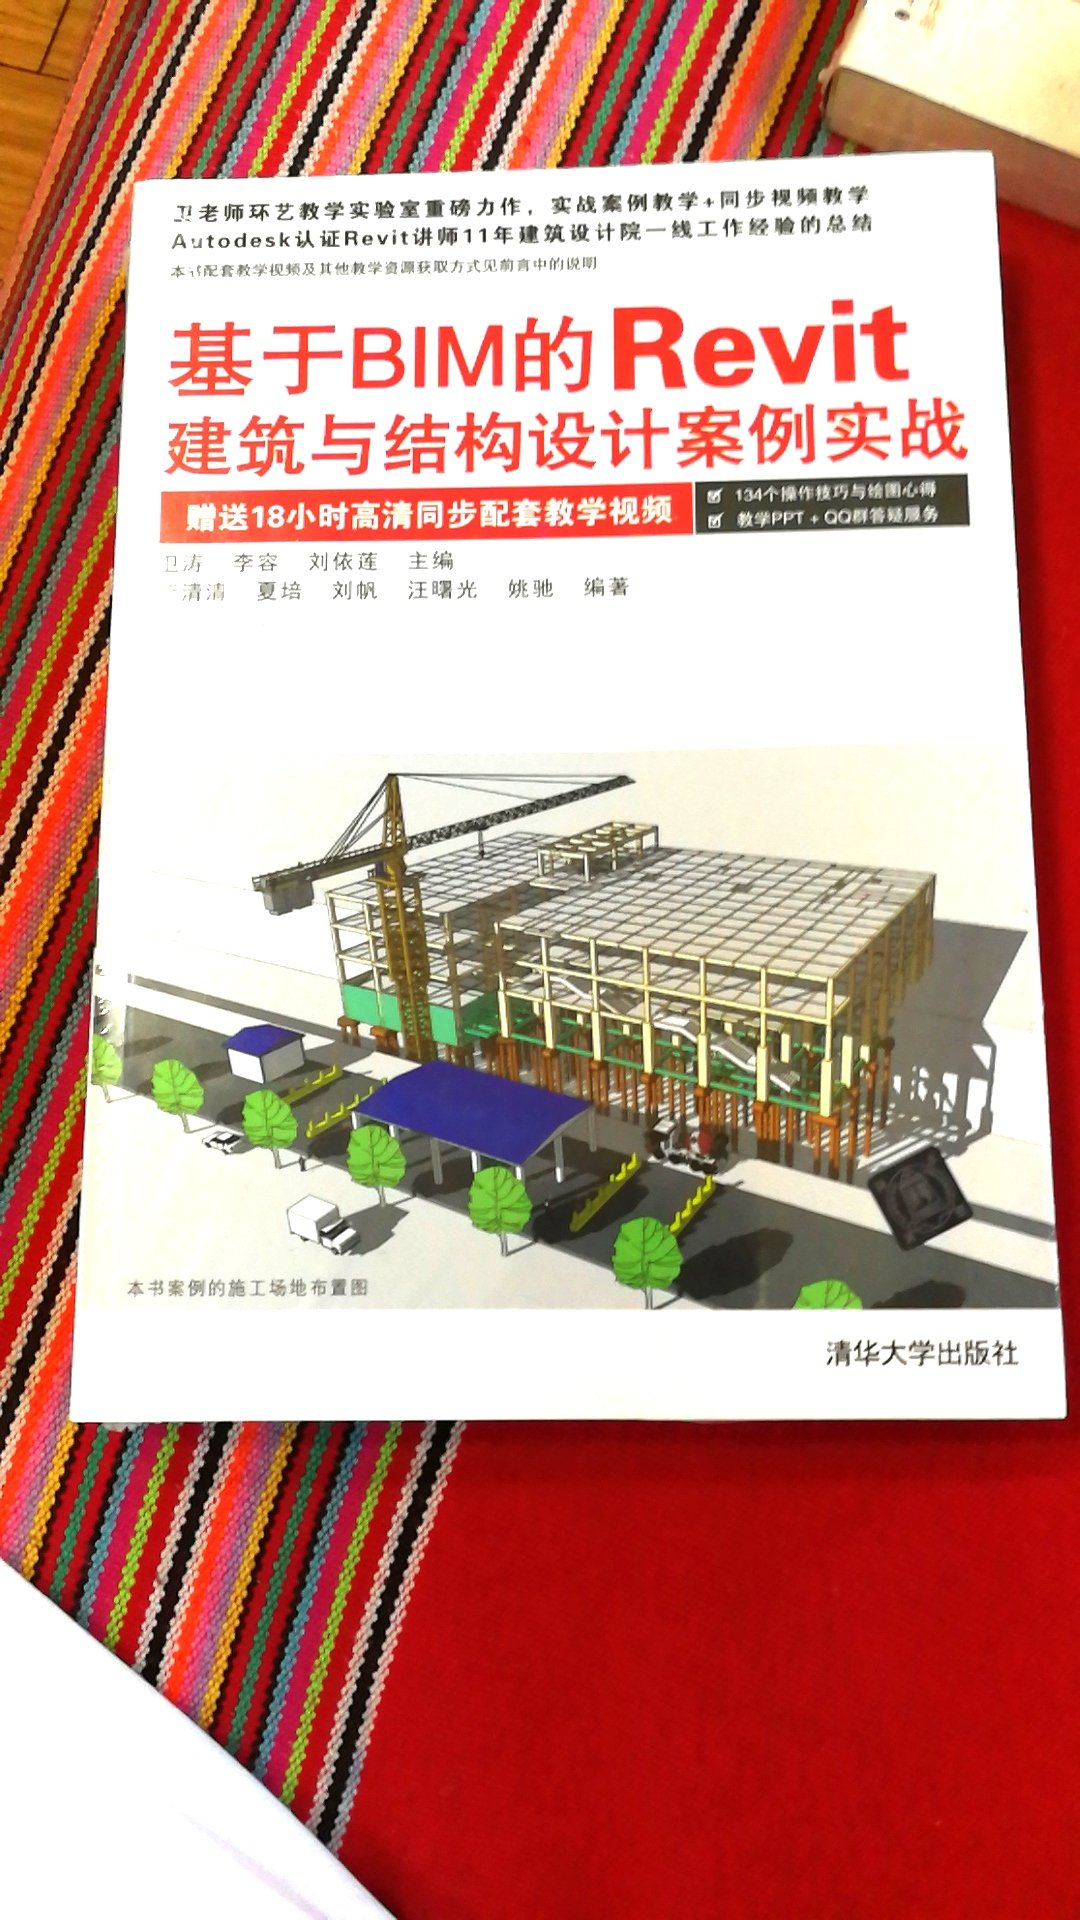 买的专业书籍，中国建筑行业推的新技术，好好学习